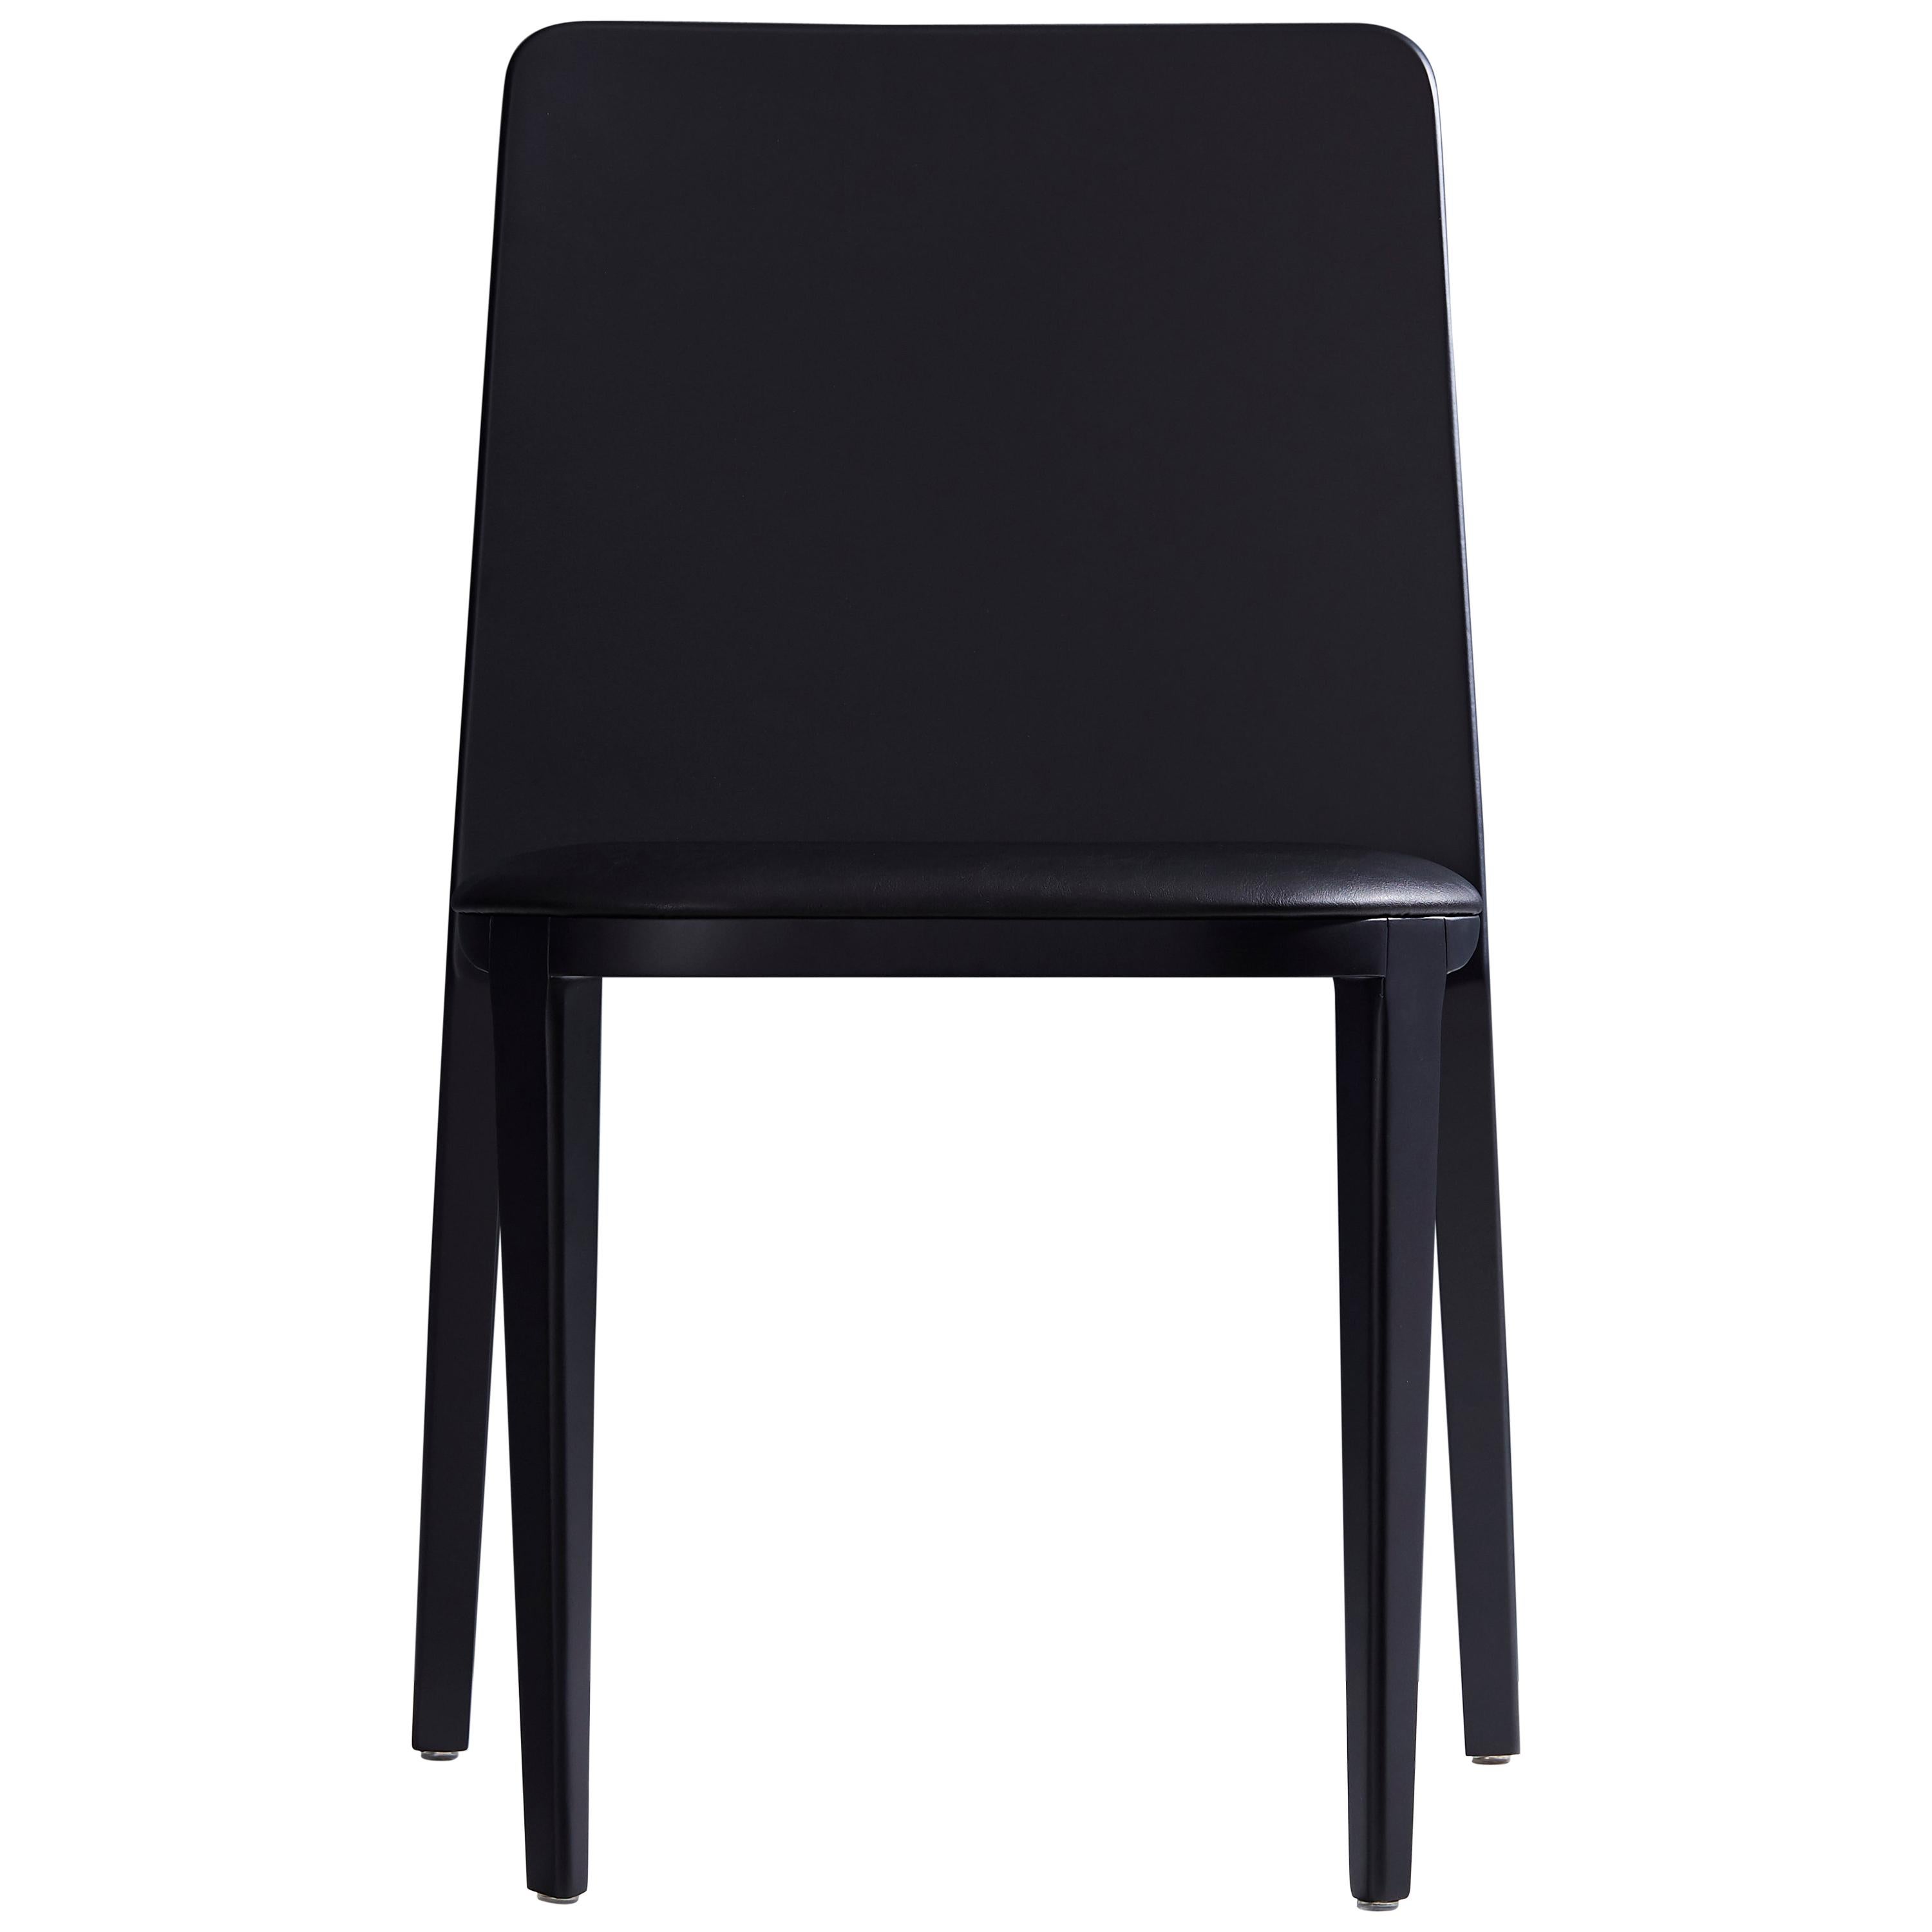 Chaise en bois massif, sièges en cuir, panneau arrière massif de style minimaliste